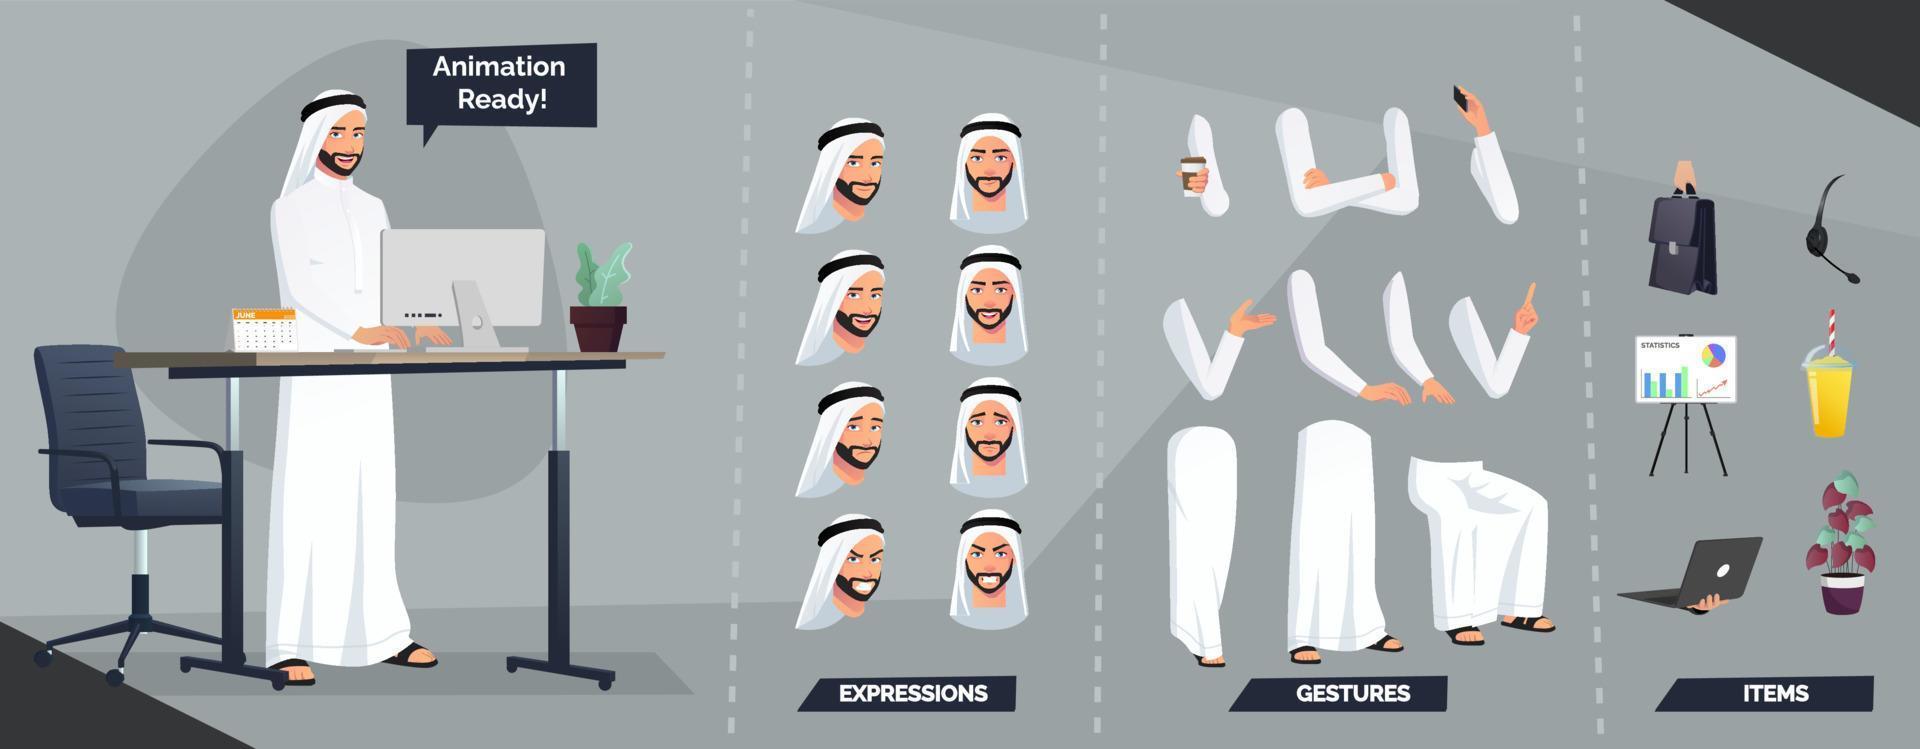 stilizzato arabo musulmano uomo personaggio creazione con tradizionale Arabia panni e turbante vettore